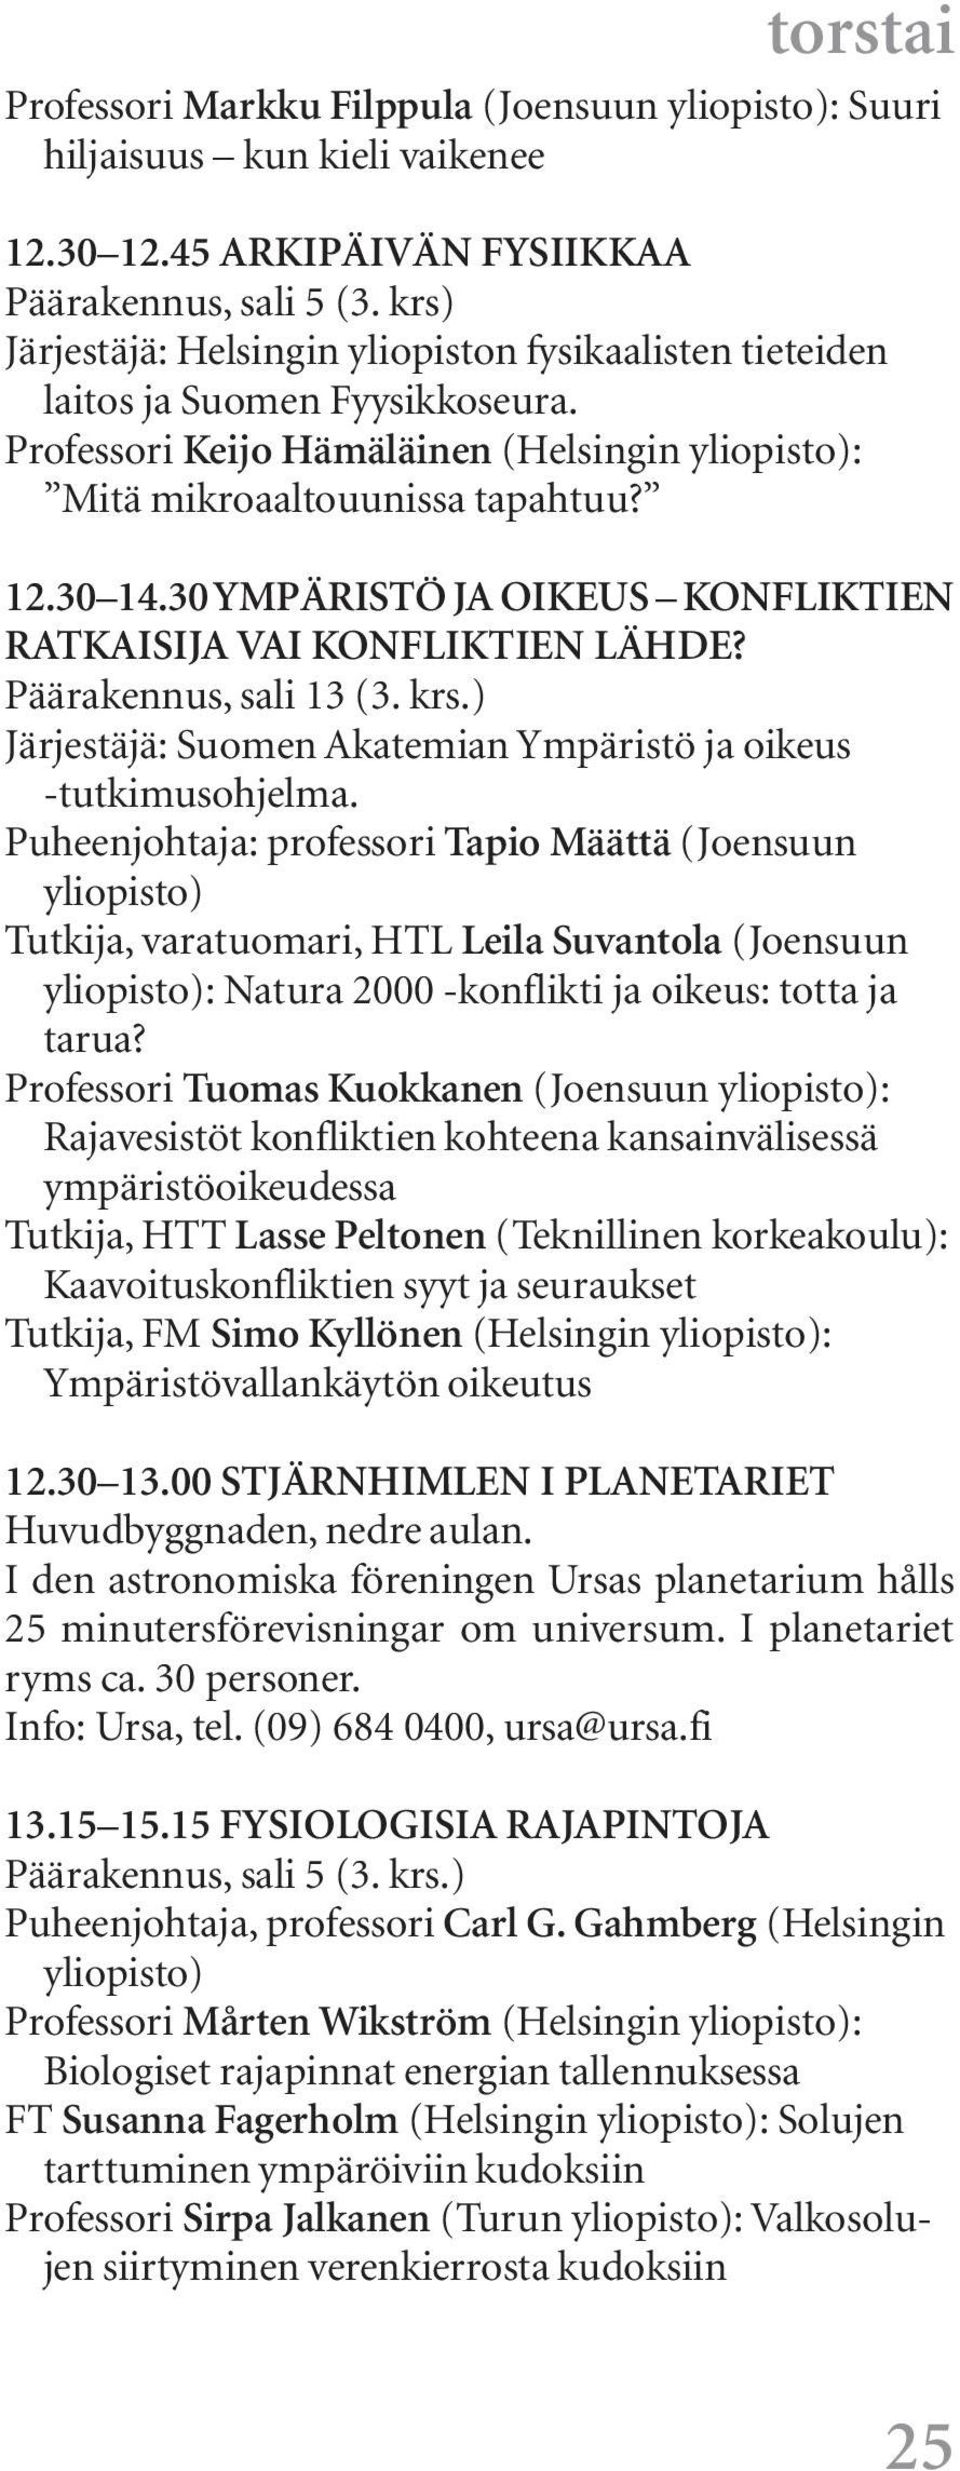 30 YMPÄRISTÖ JA OIKEUS KONFLIKTIEN RATKAISIJA VAI KONFLIKTIEN LÄHDE? Päärakennus, sali 13 (3. krs.) Järjestäjä: Suomen Akatemian Ympäristö ja oikeus -tutkimusohjelma.